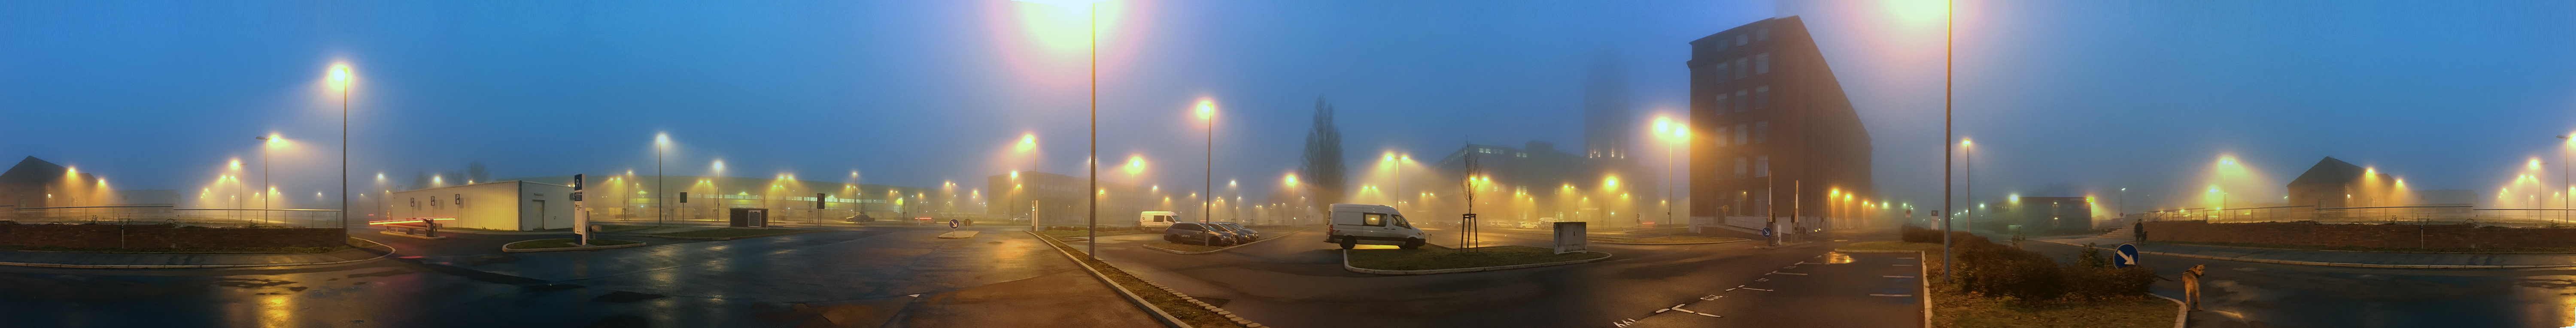 Lichter im Nebel - Neujahr 2016 - Berlin Siemensstadt - Panorama